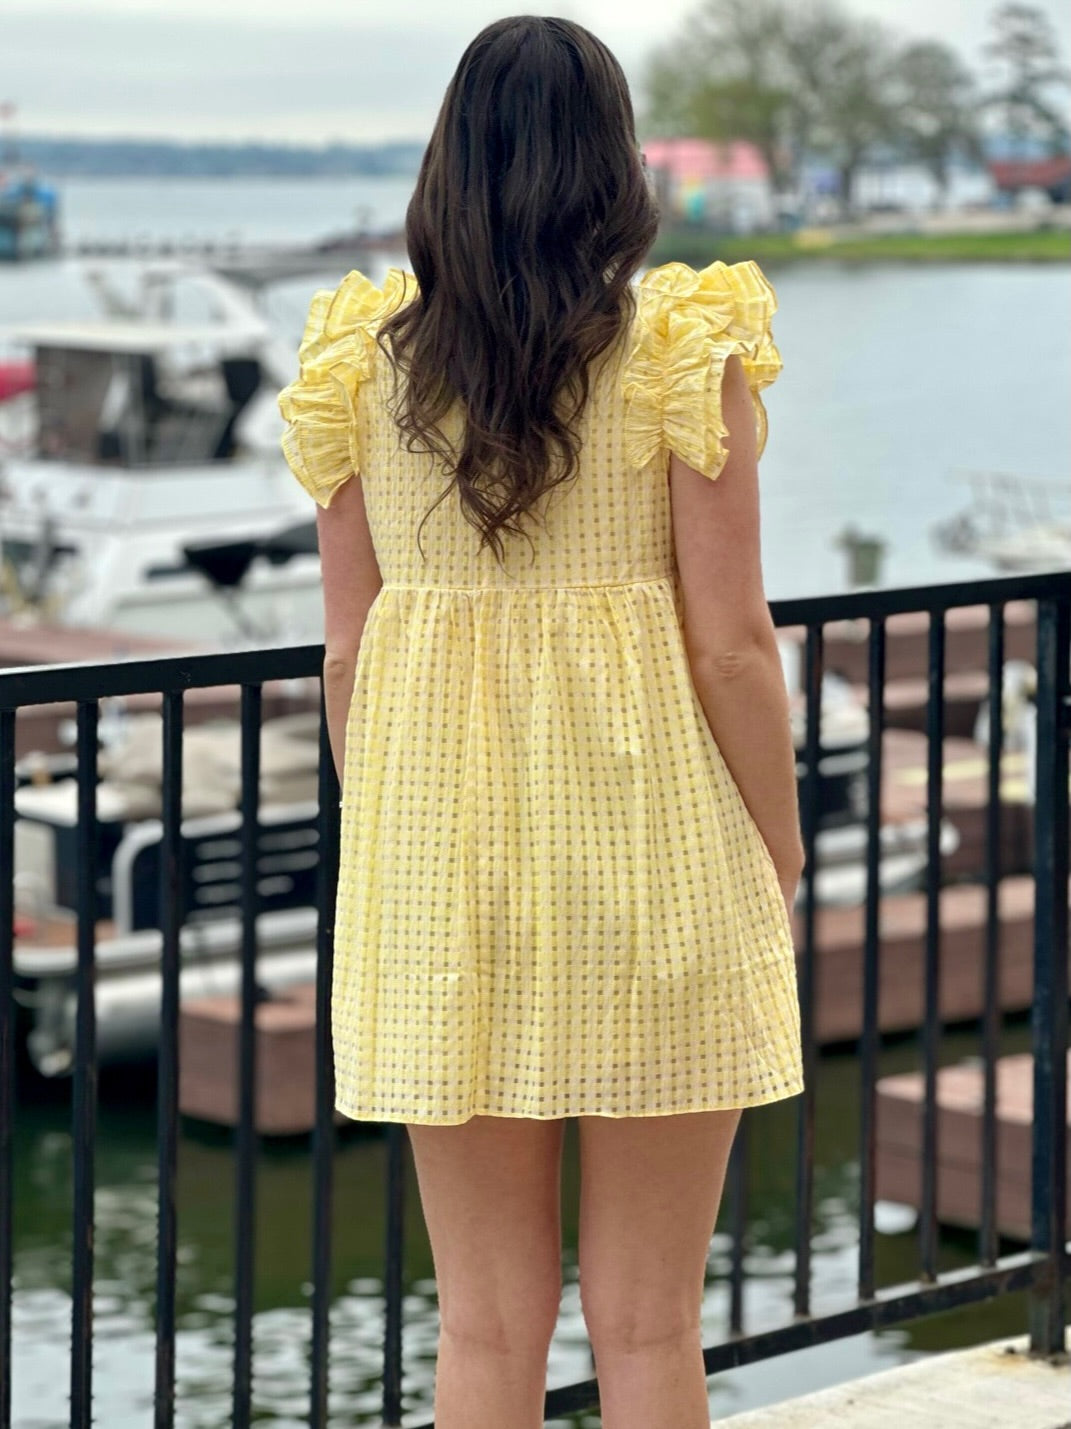 Megan in lemon dress back view